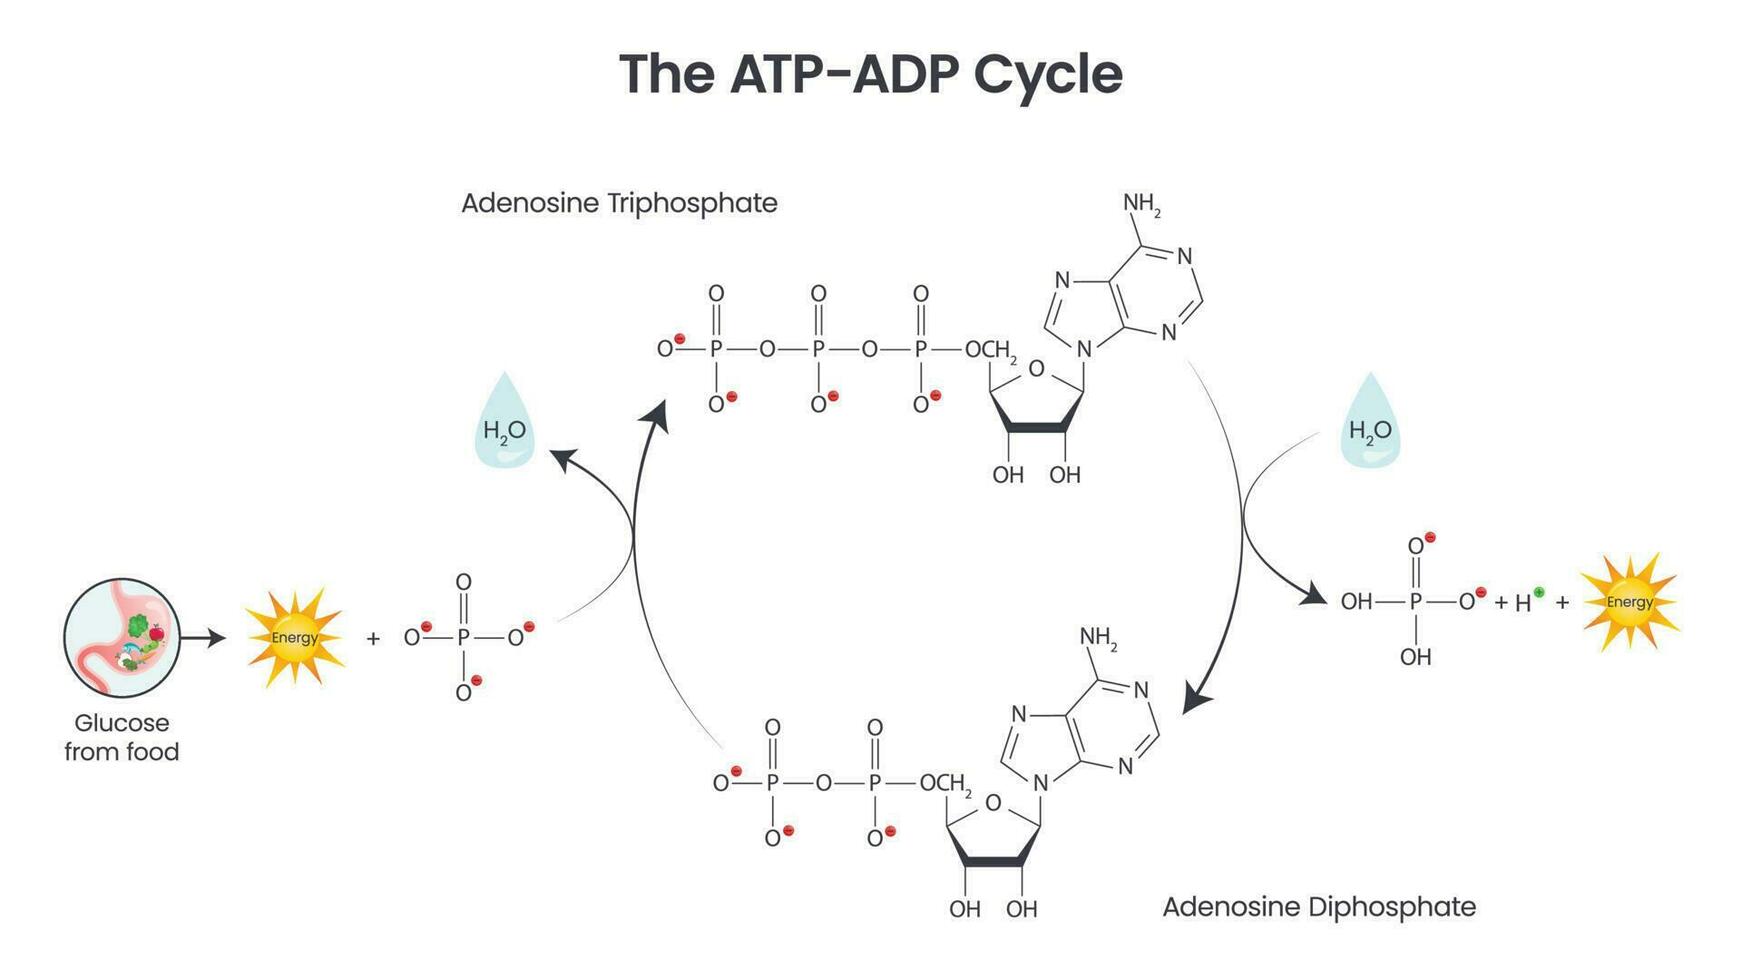 adenosin trifosfat och adenosin difosfat jämförelse och cykel vetenskap vektor utbildning infographic